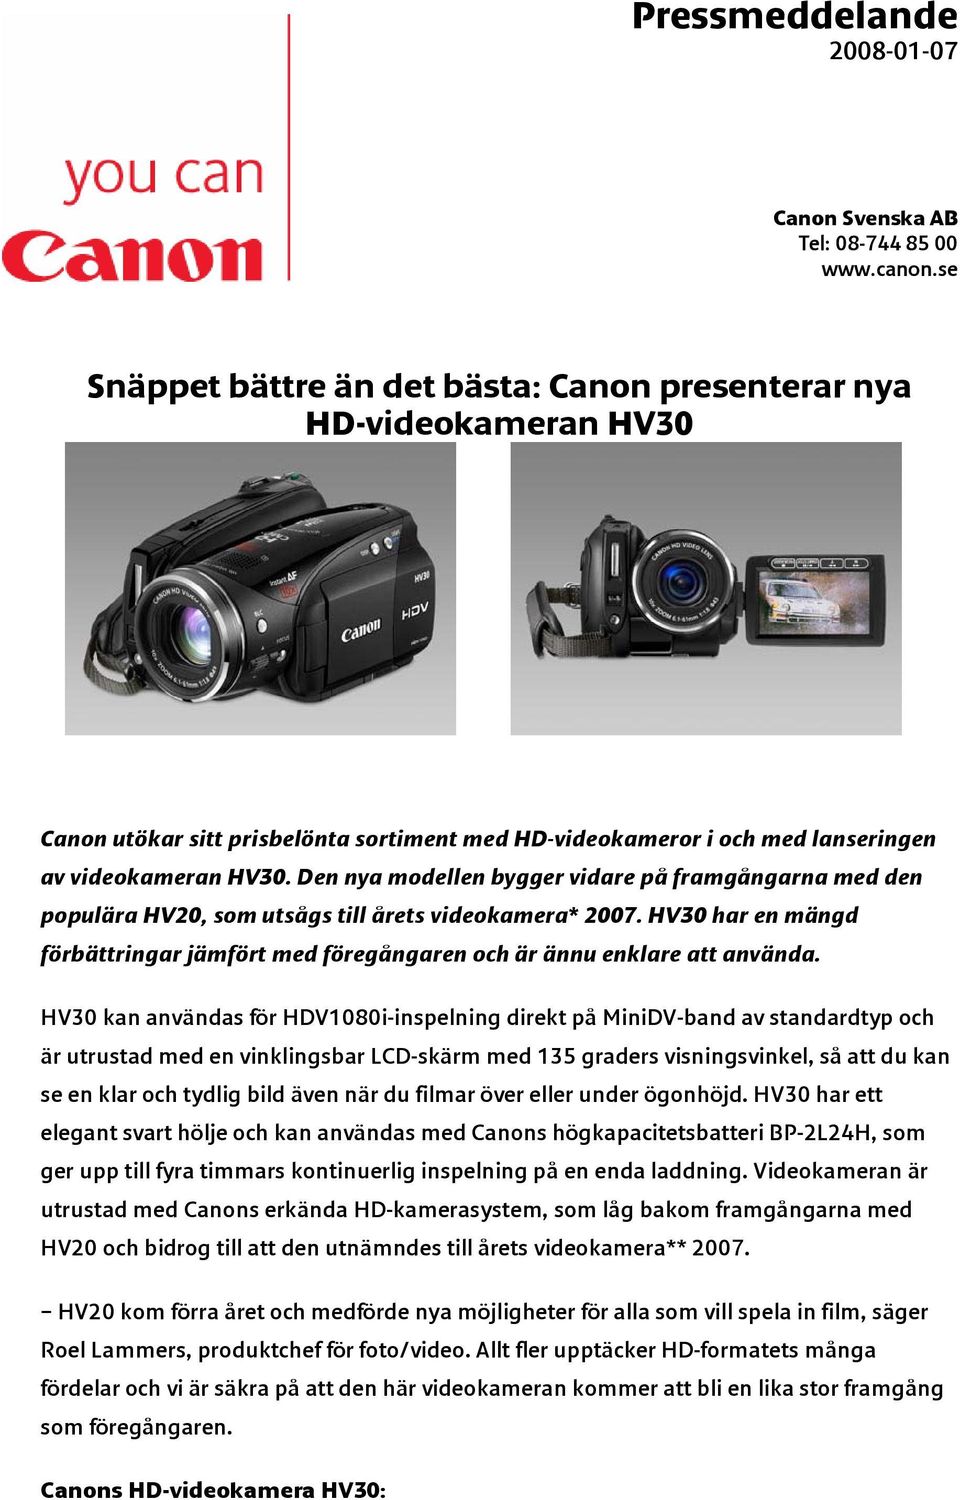 Den nya modellen bygger vidare på framgångarna med den populära HV20, som utsågs till årets videokamera* 2007. HV30 har en mängd förbättringar jämfört med föregångaren och är ännu enklare att använda.